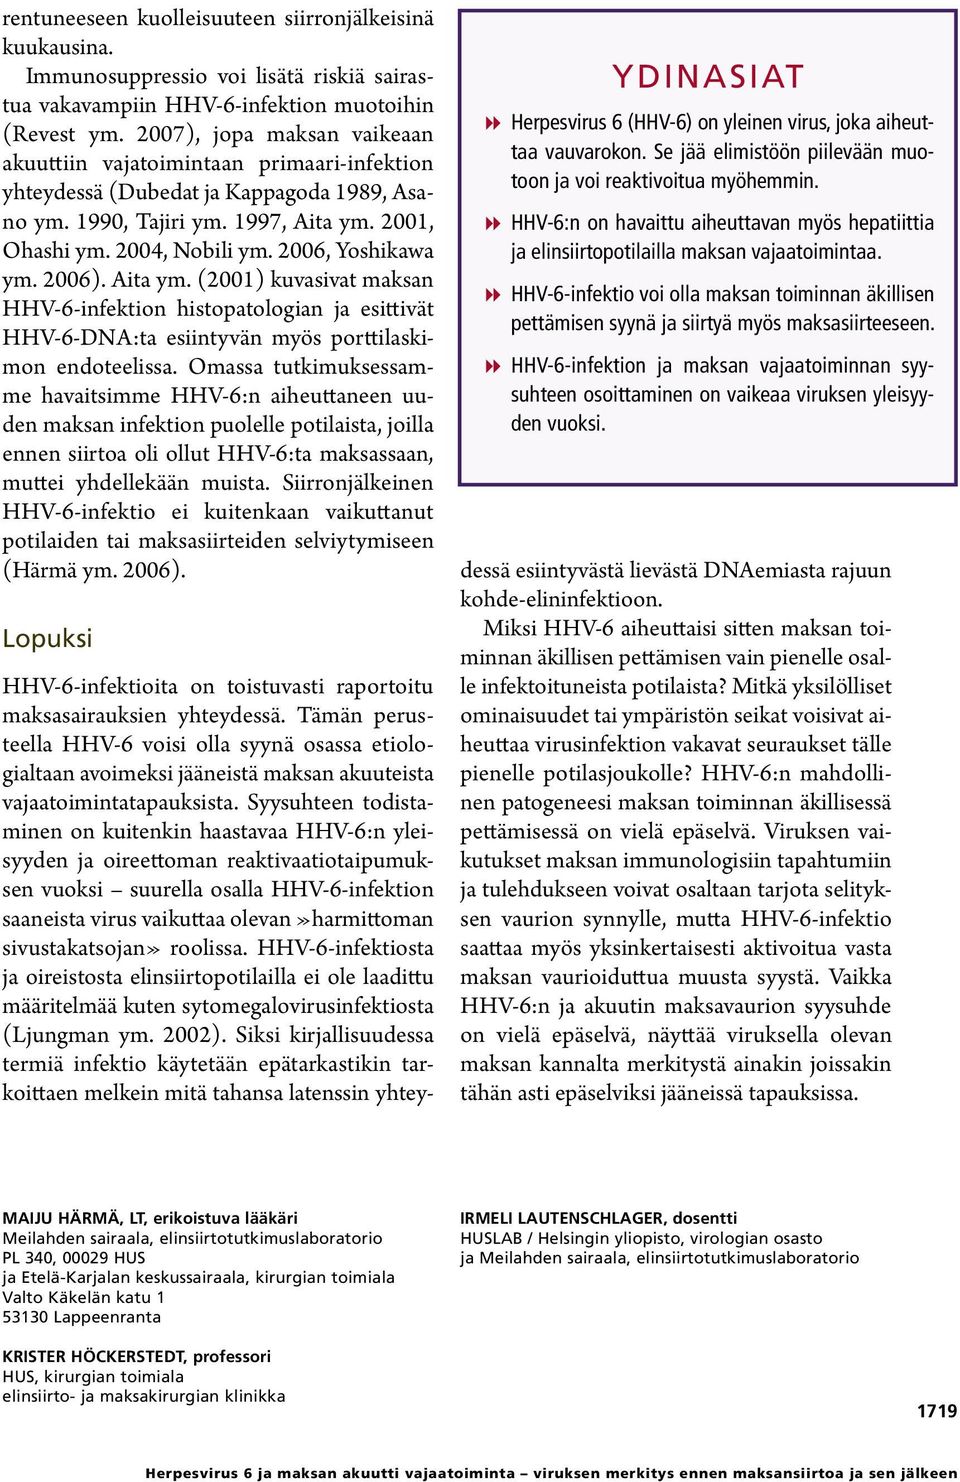 2006, Yoshikawa ym. 2006). Aita ym. (2001) kuvasivat maksan HHV-6-infektion histopatologian ja esittivät HHV-6-DNA:ta esiintyvän myös porttilaskimon endoteelissa.